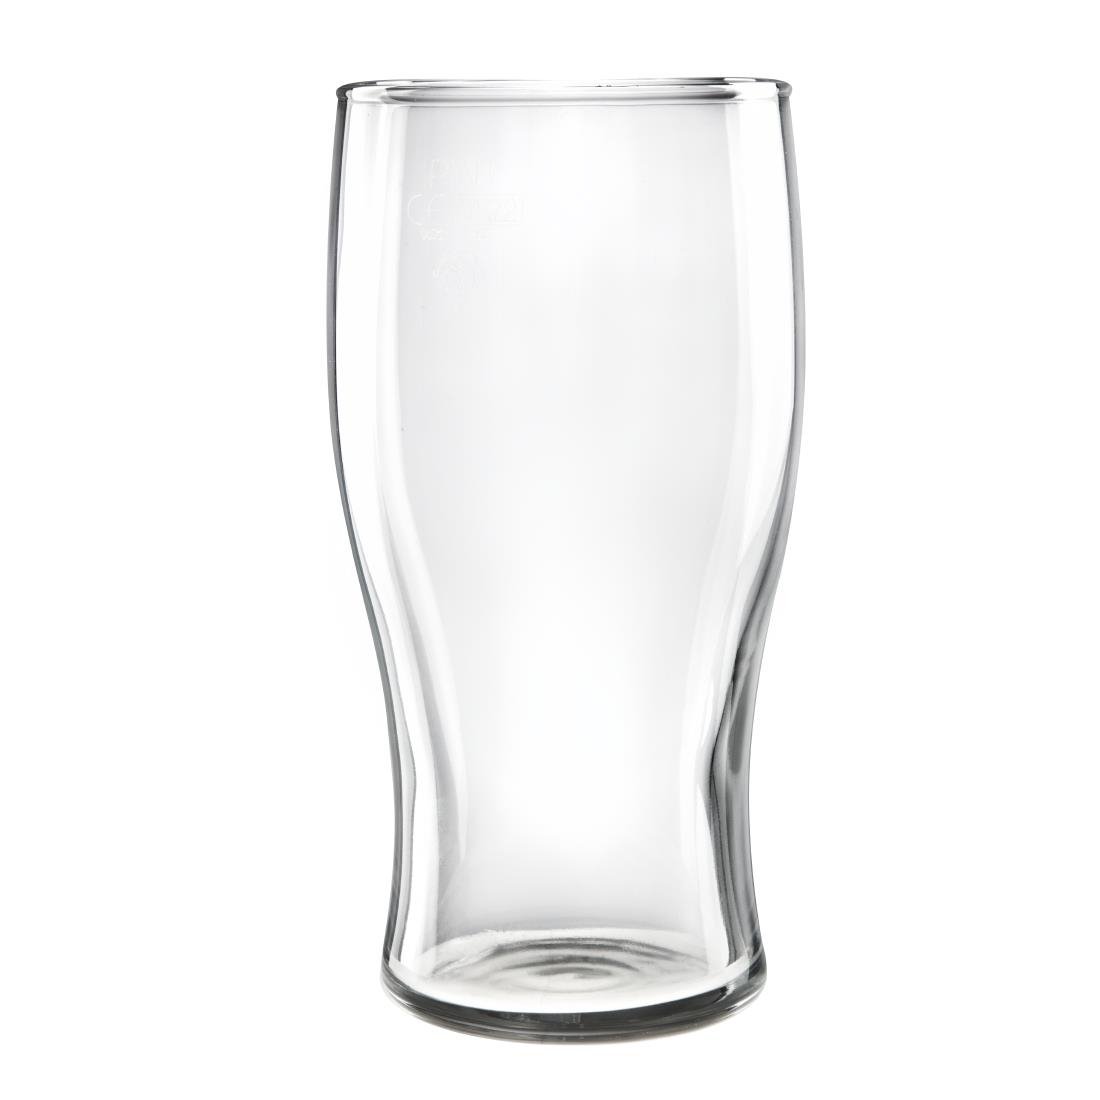 Arcoroc Tulp bierglazen 591ml CE-gemarkeerd (24 stuks)